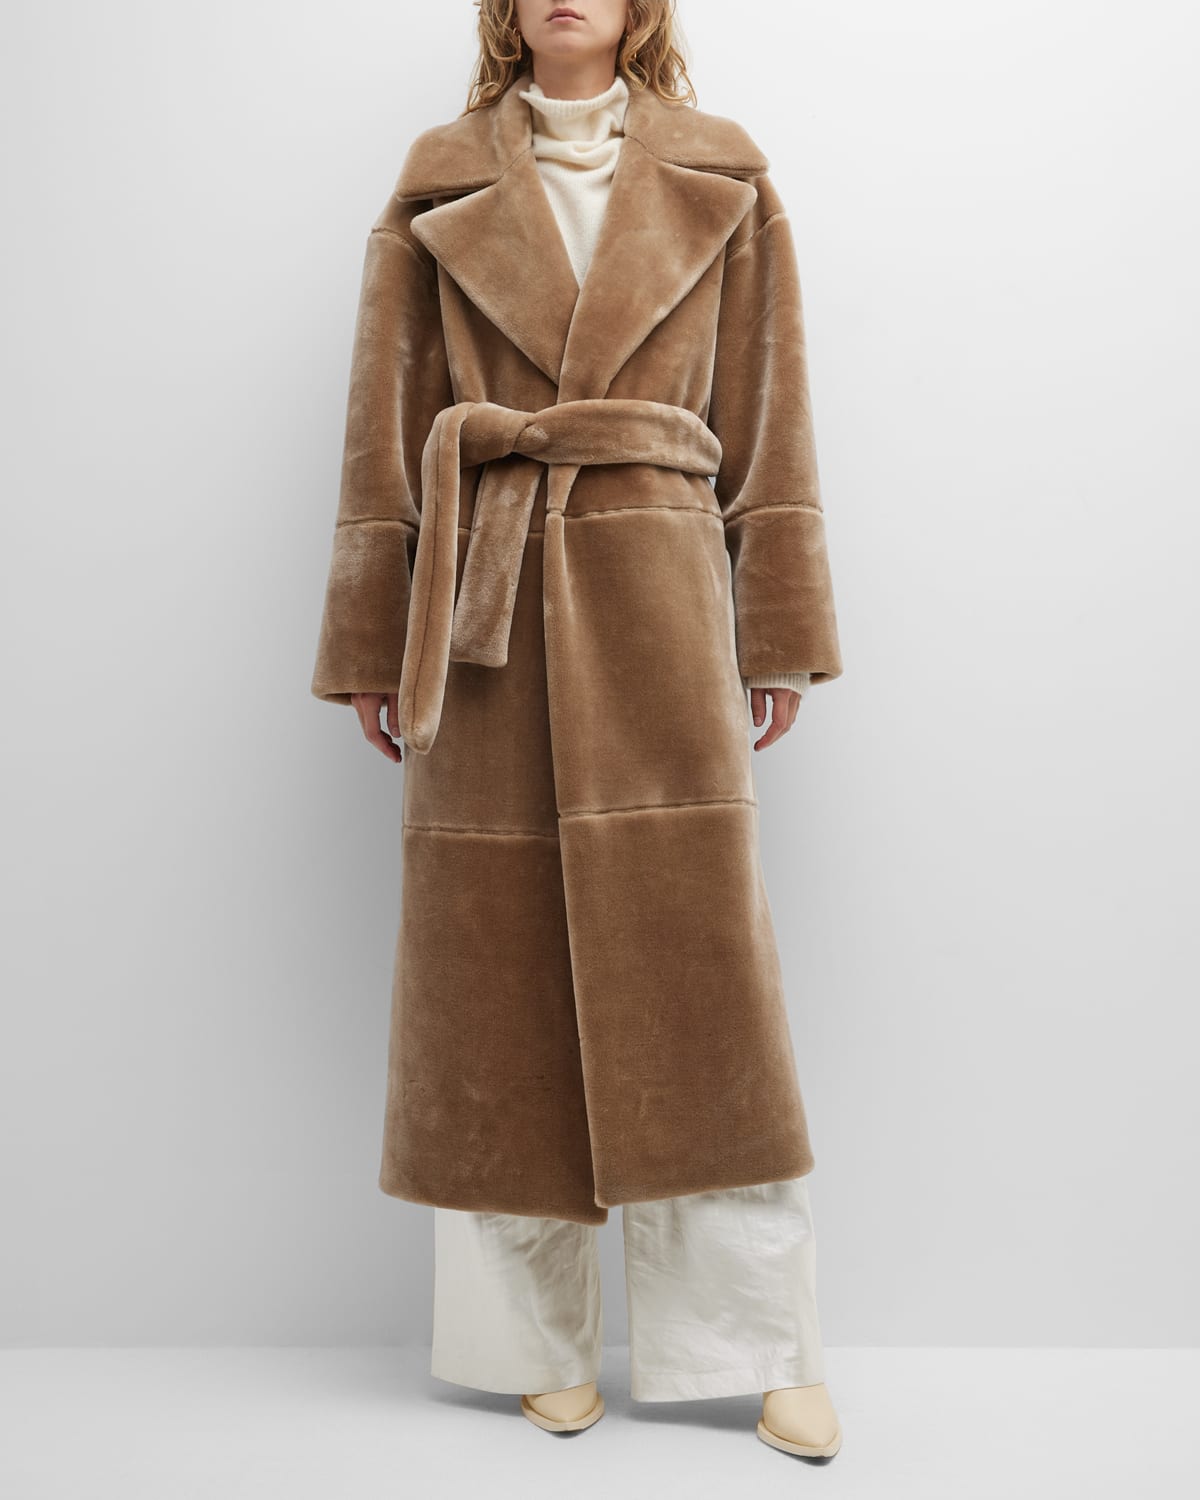 Faux Fur Outerwear | Neiman Marcus